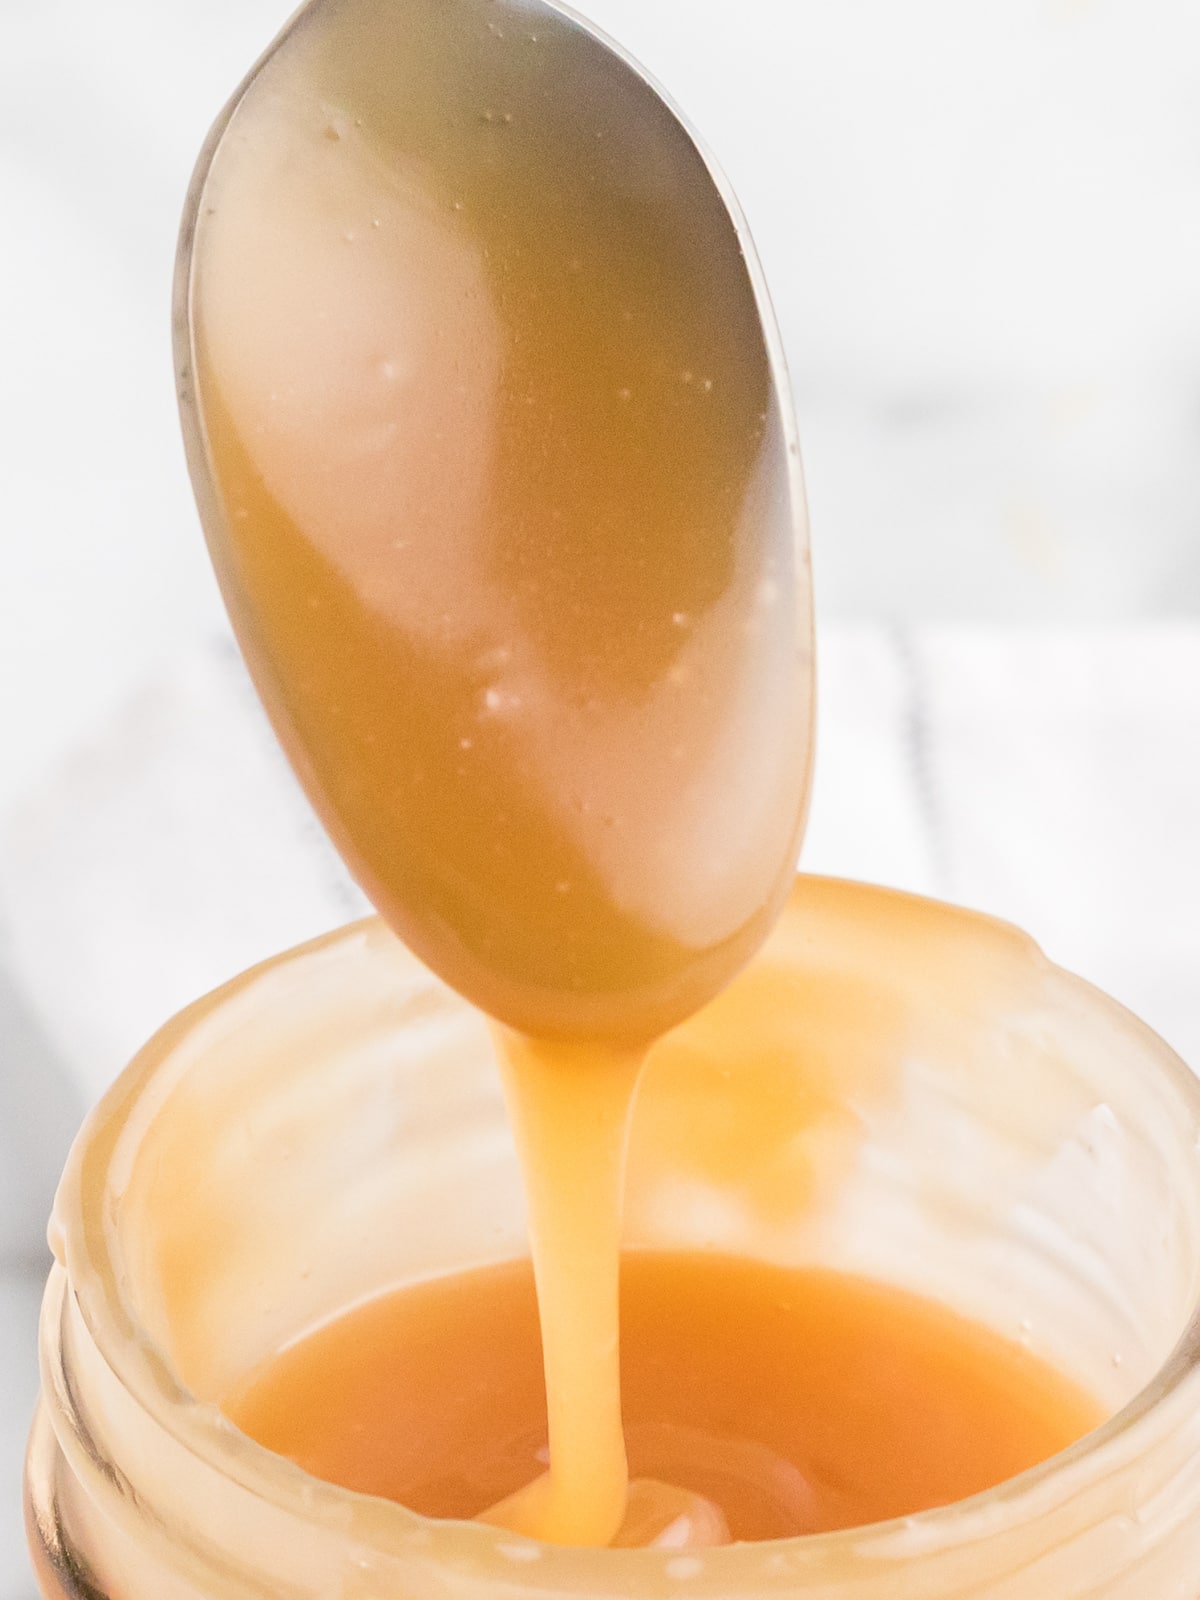 Caramel Sauce on a spoon